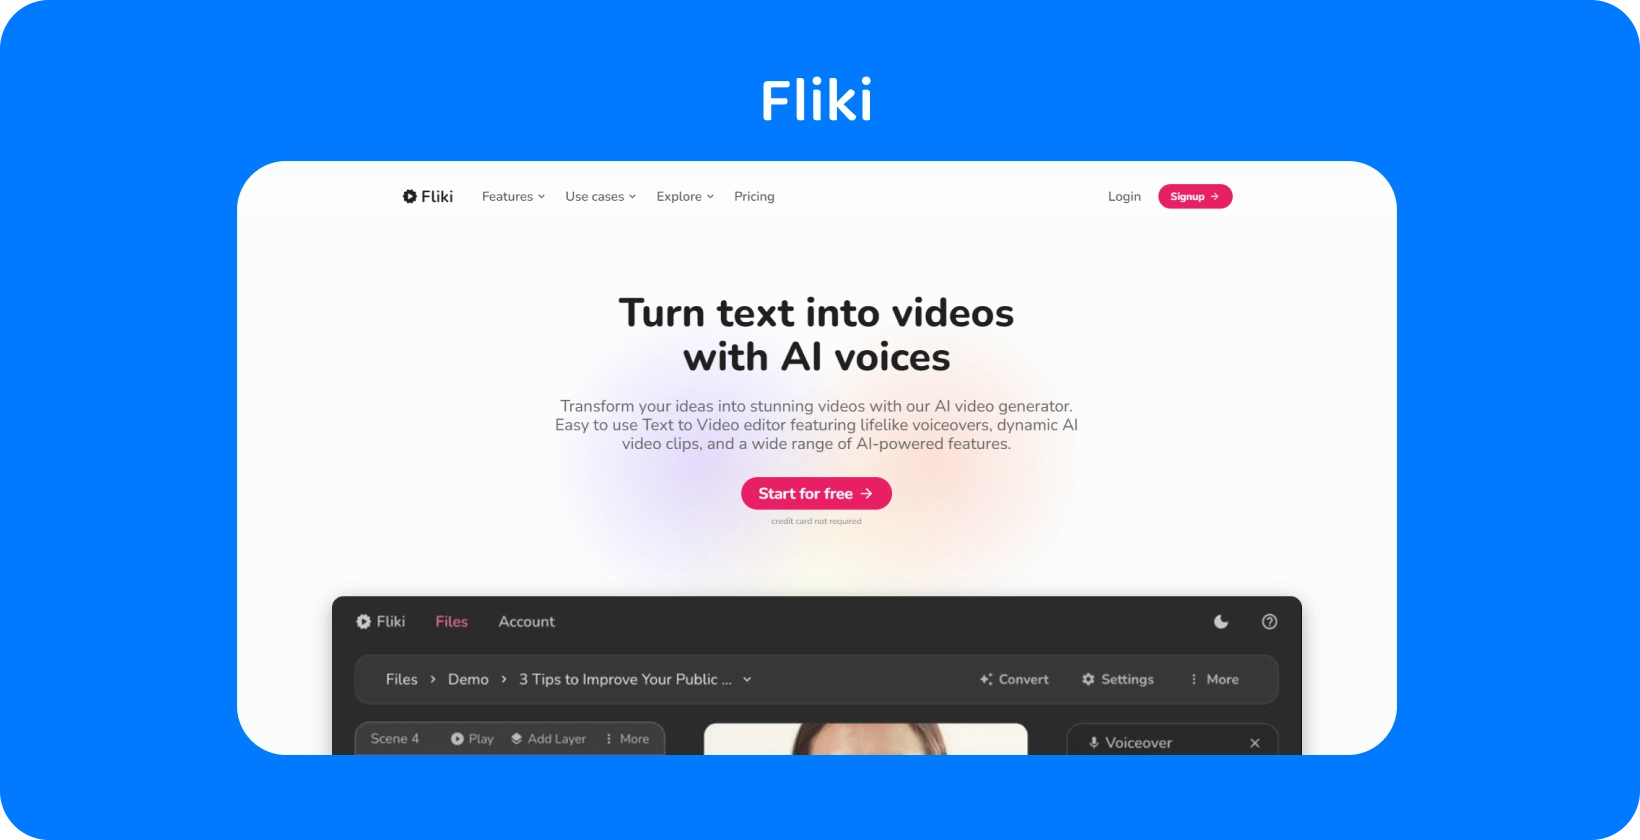 La page de la plate-forme de Fliki montre comment transformer du texte en vidéos avec des voix AI, offrant une expérience de montage texte-vidéo.